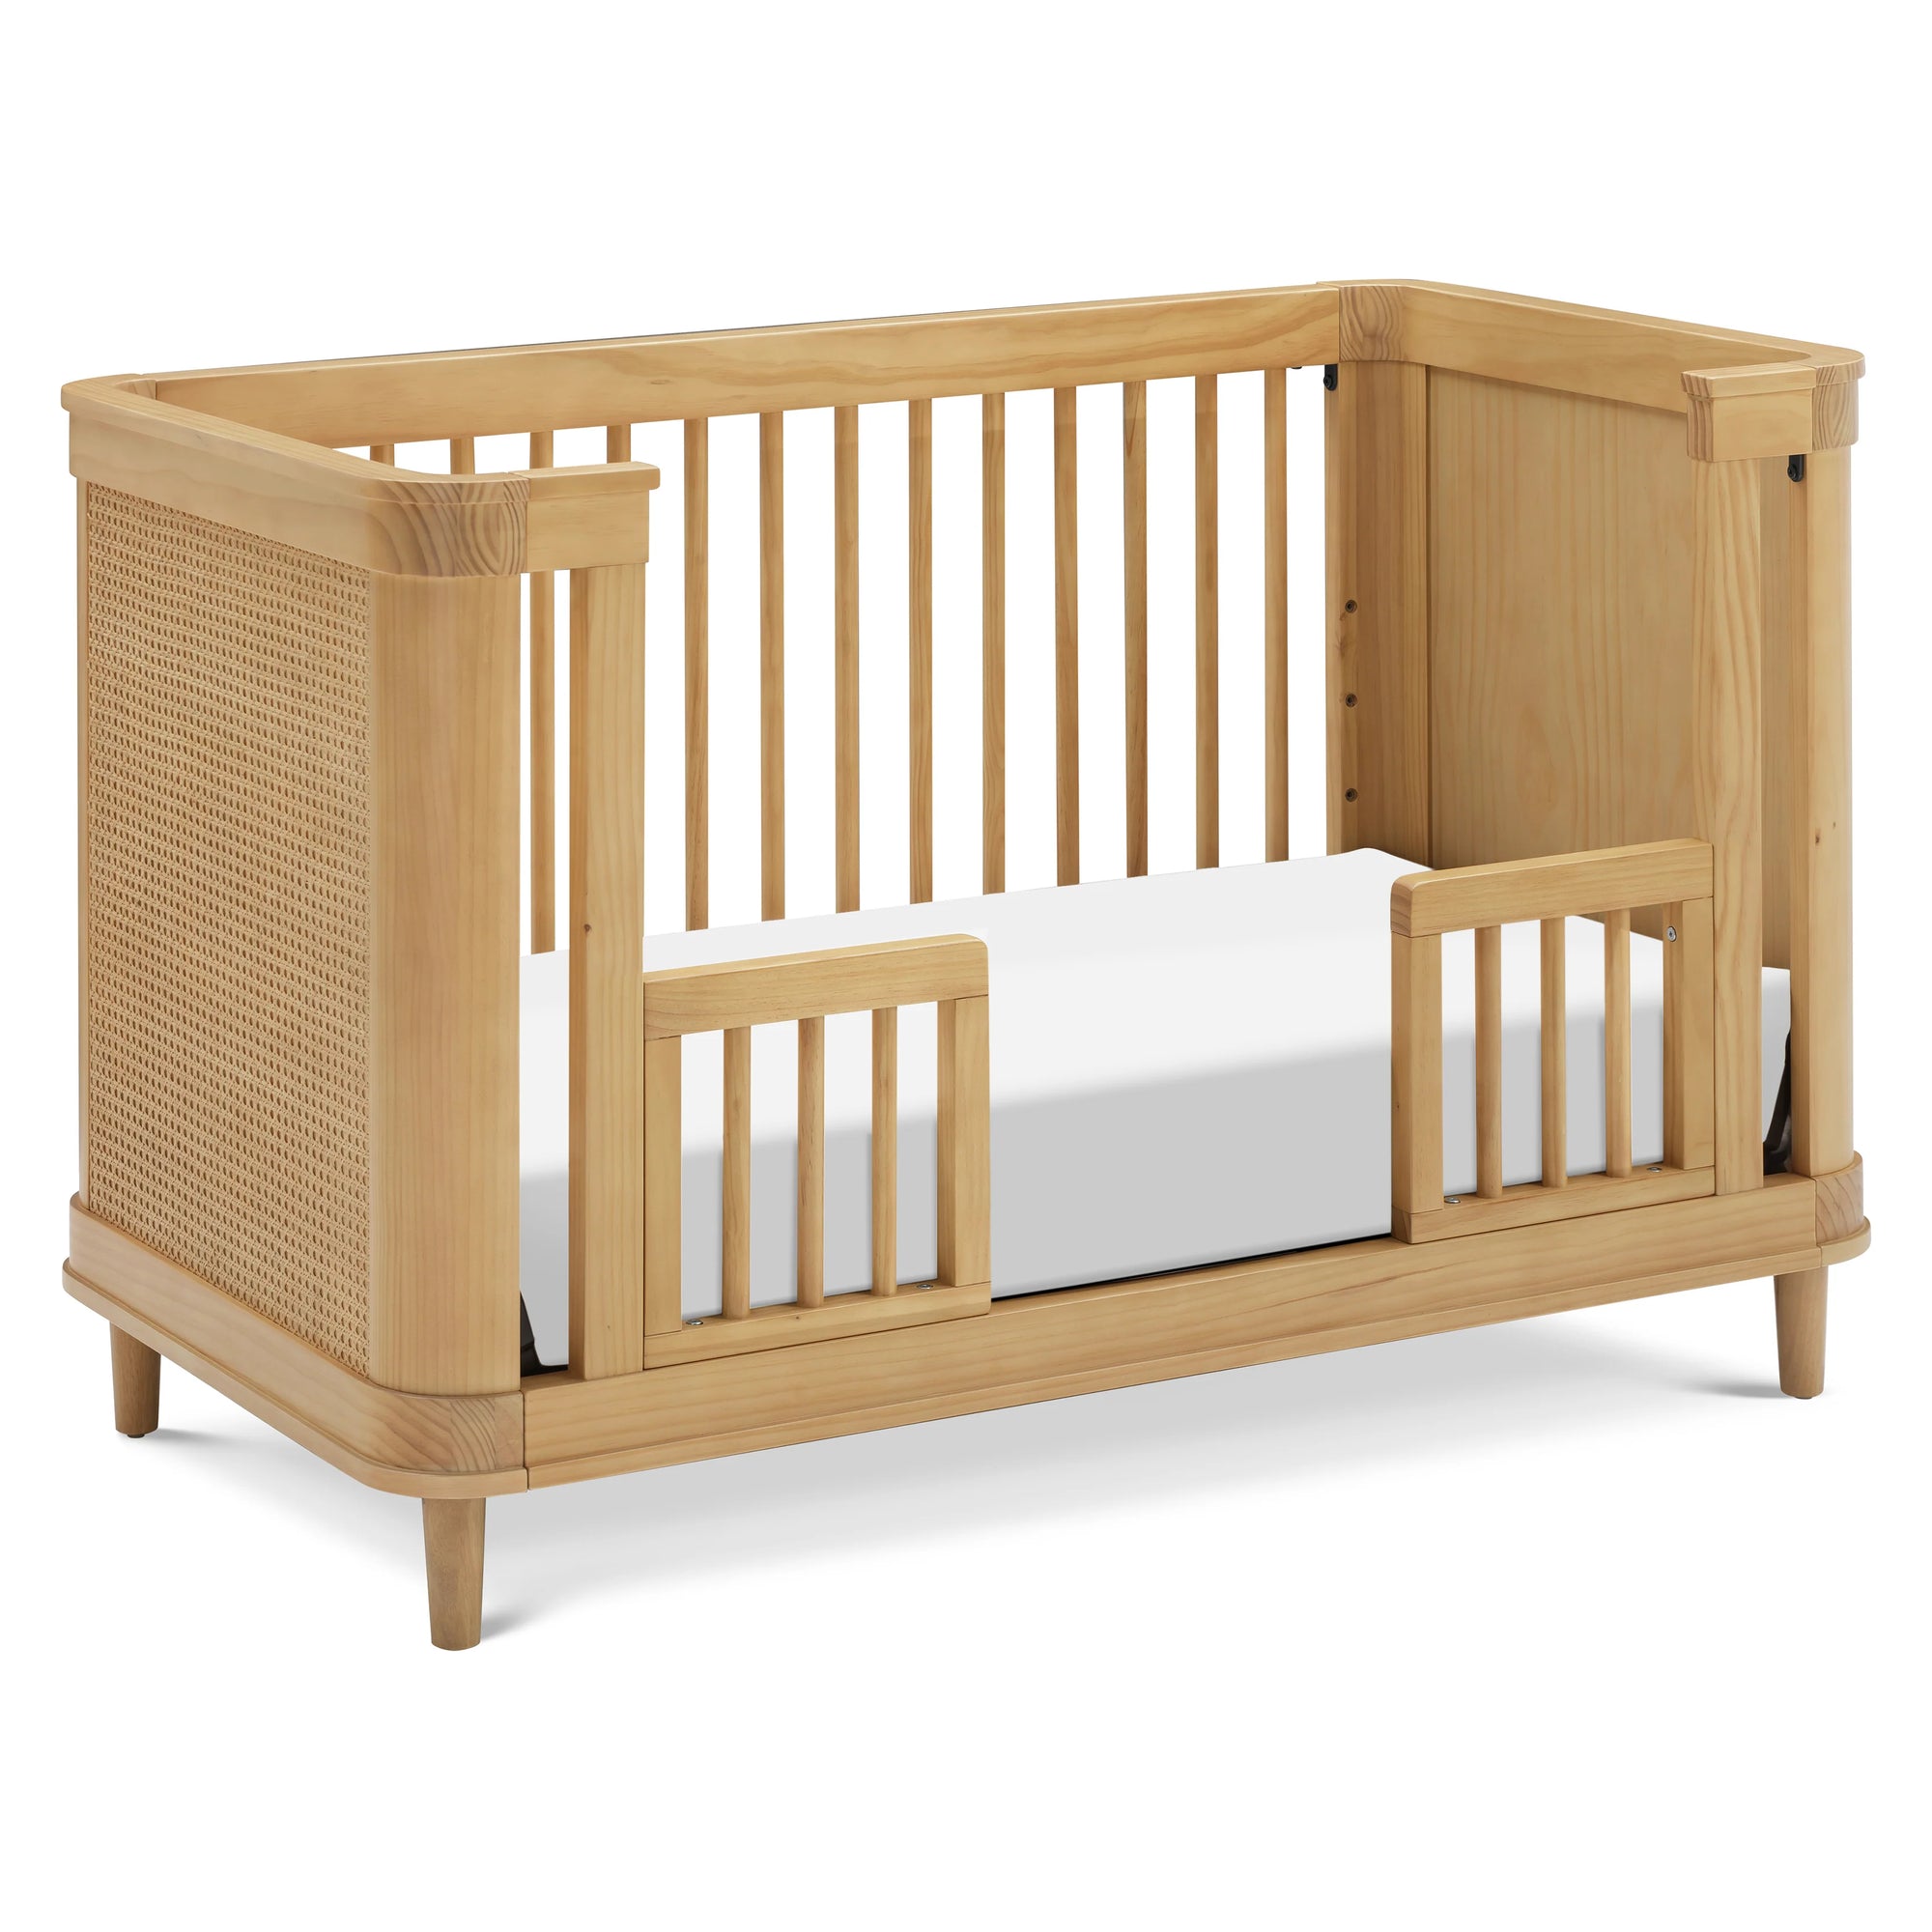 Honey Lifestyle - Namesake Marin Convertible Crib Toddler Bed Conversion Kit